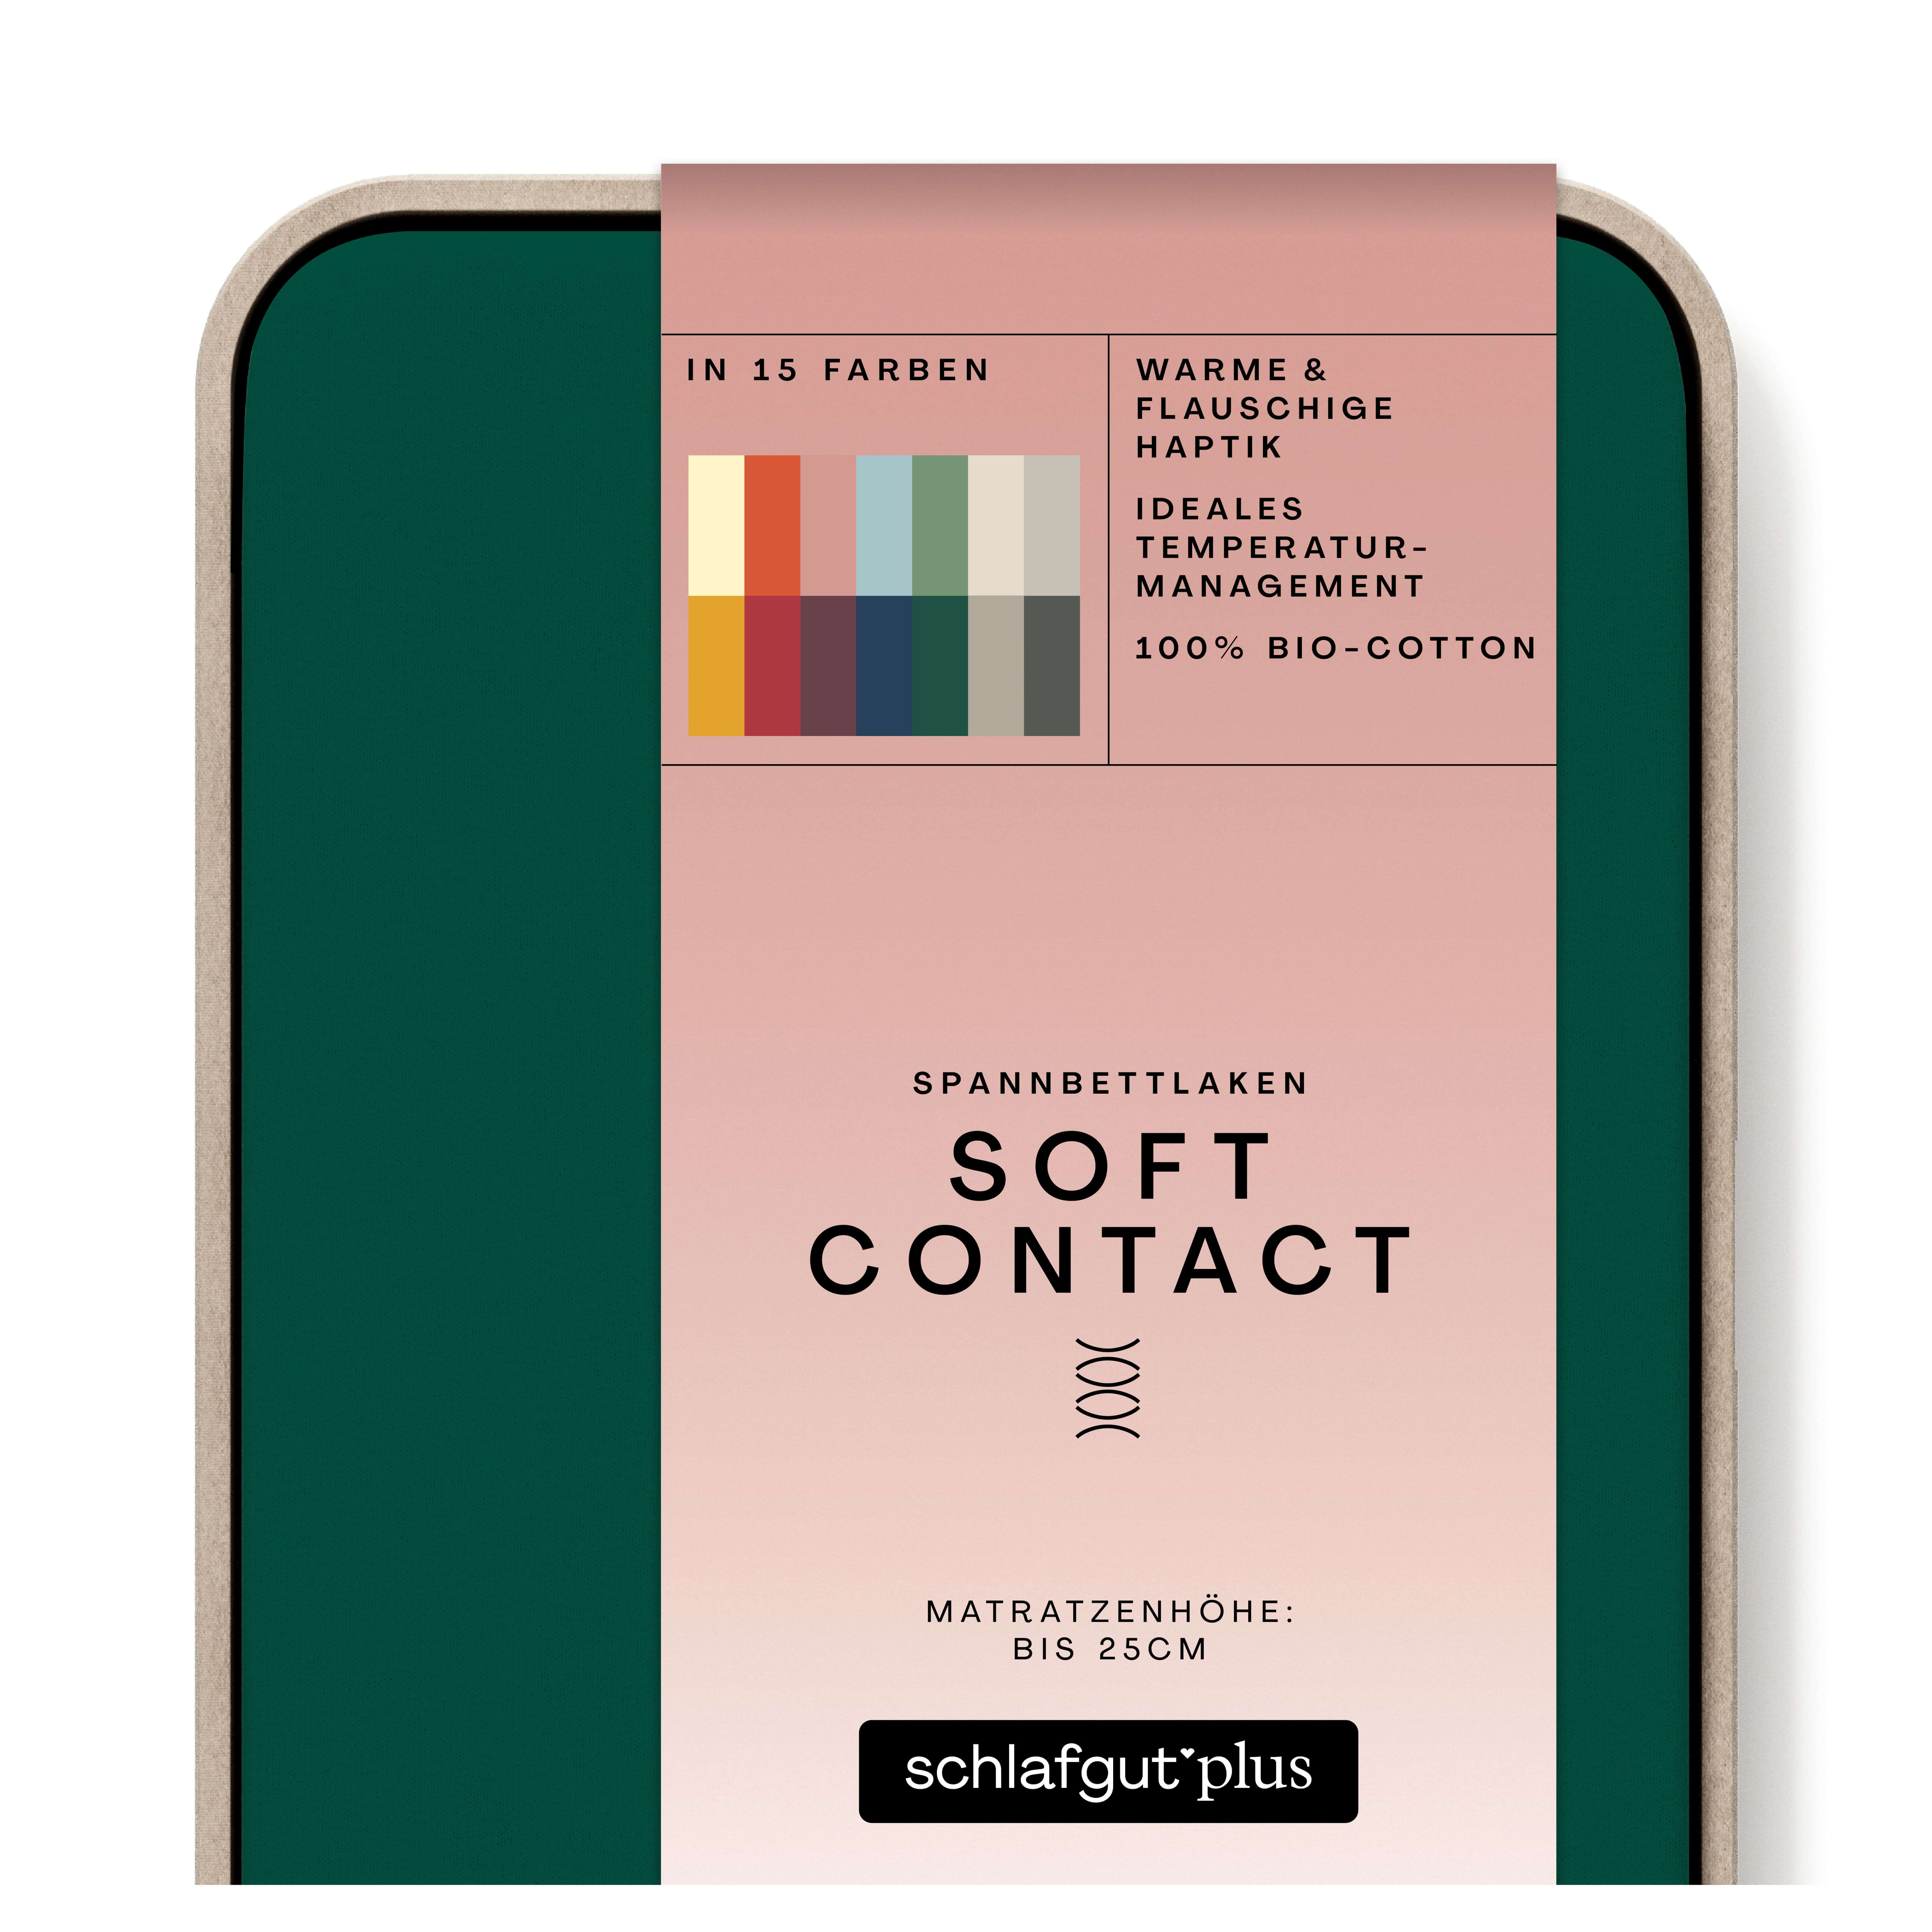 Das Produktbild vom Spannbettlaken der Reihe Soft Contact in Farbe green deep von Schlafgut